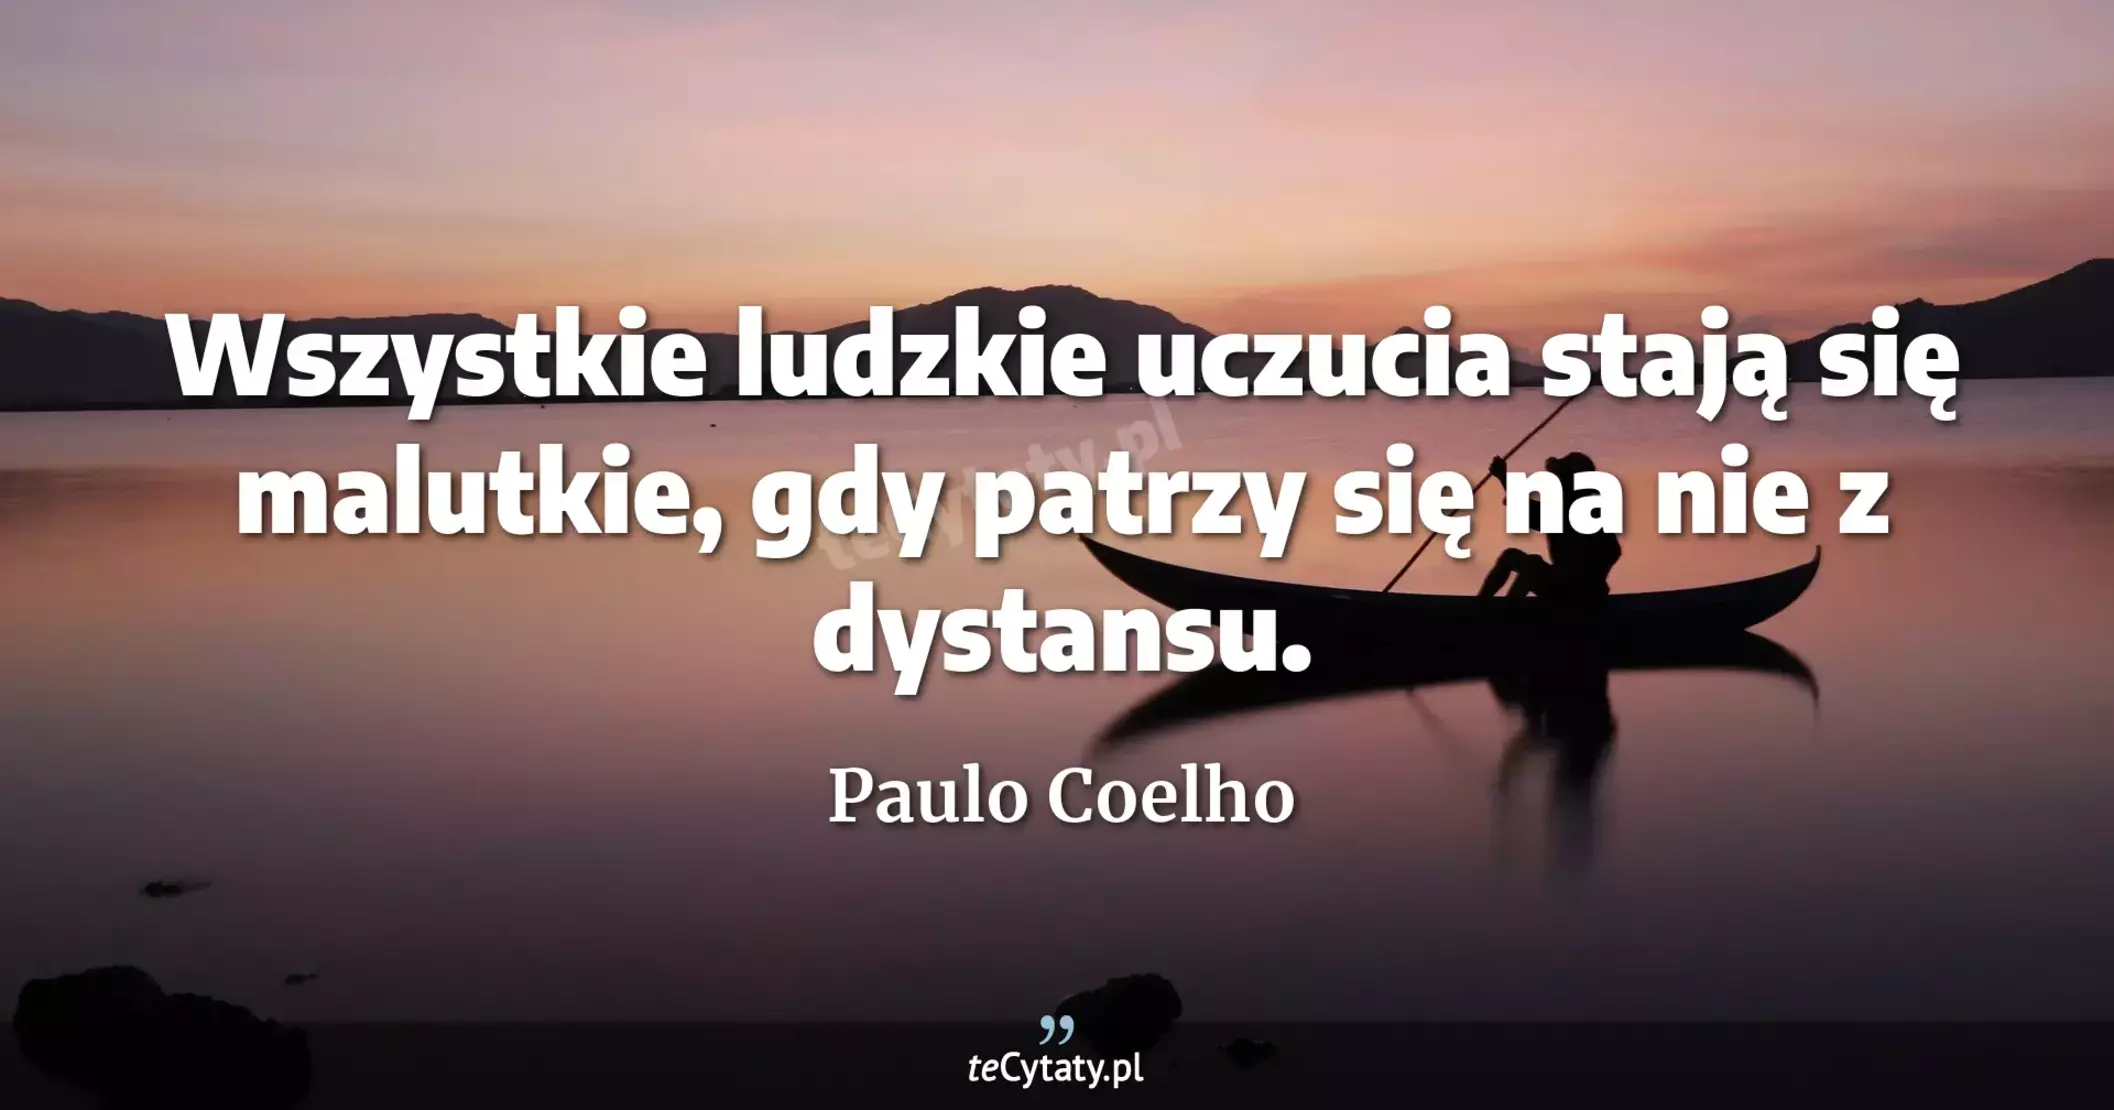 Wszystkie ludzkie uczucia stają się malutkie, gdy patrzy się na nie z dystansu. - Paulo Coelho